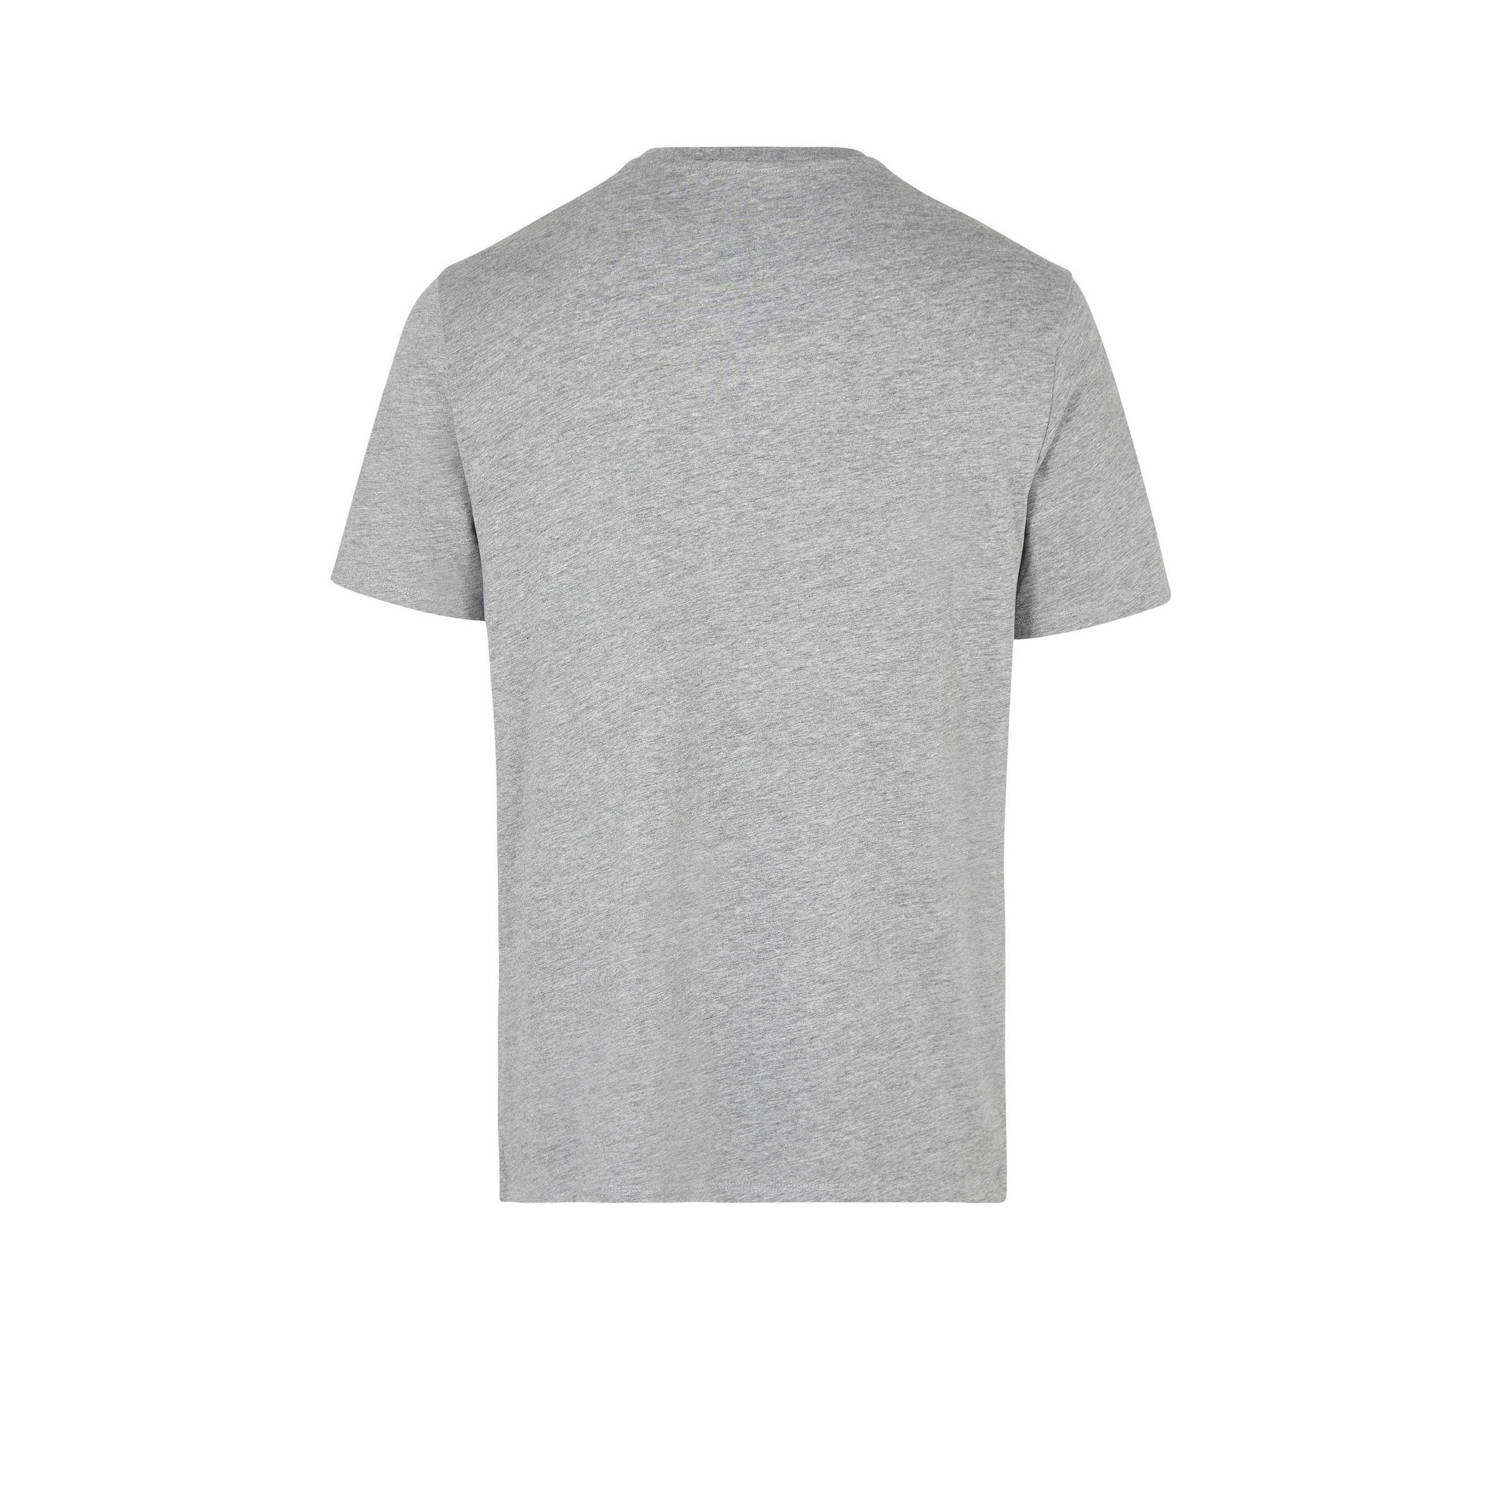 O'Neill T-shirt met logo grijs